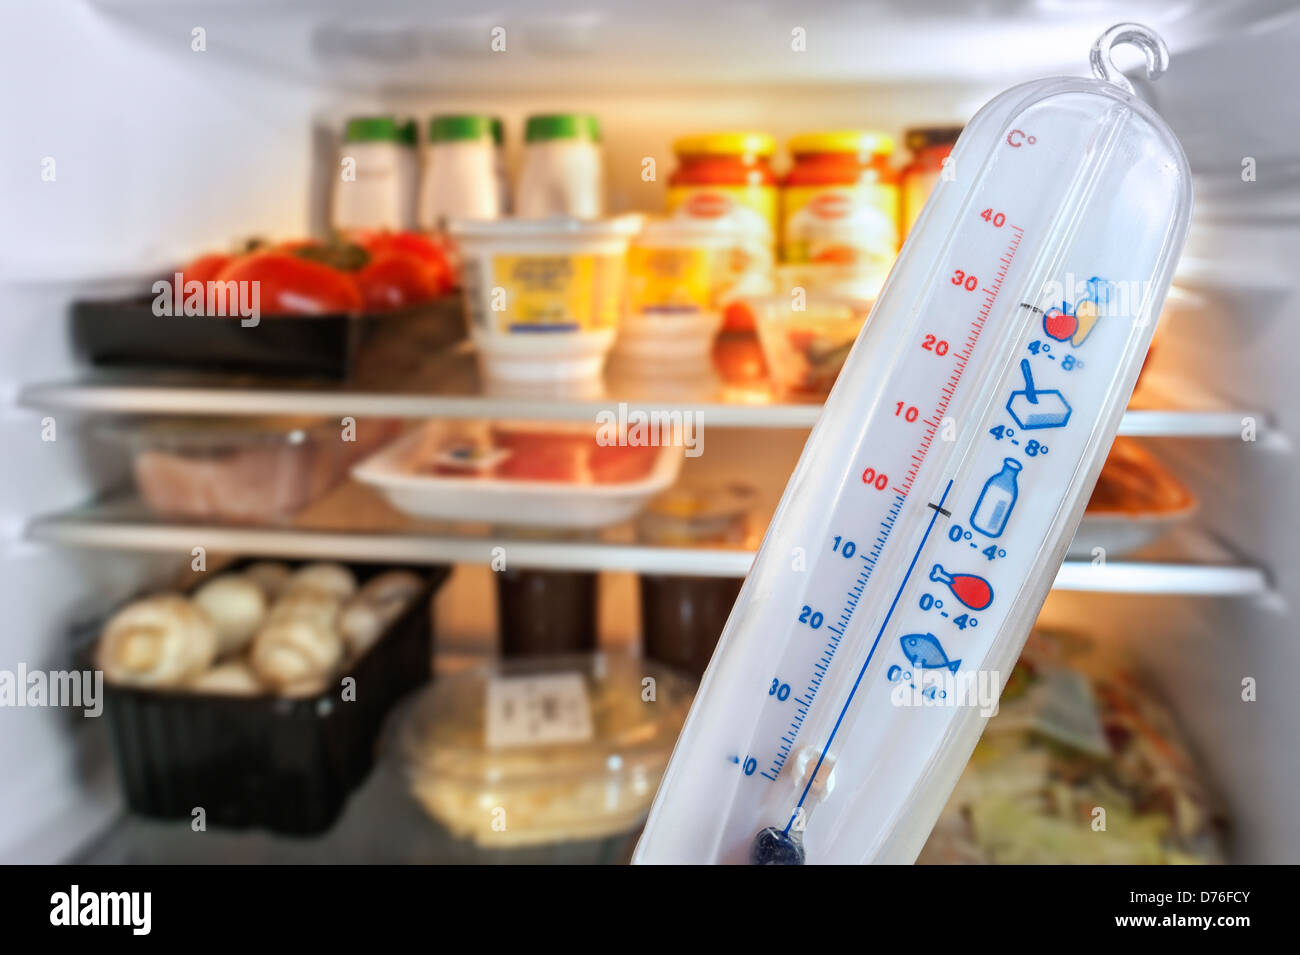 Termometro nella parte anteriore del frigorifero aperto